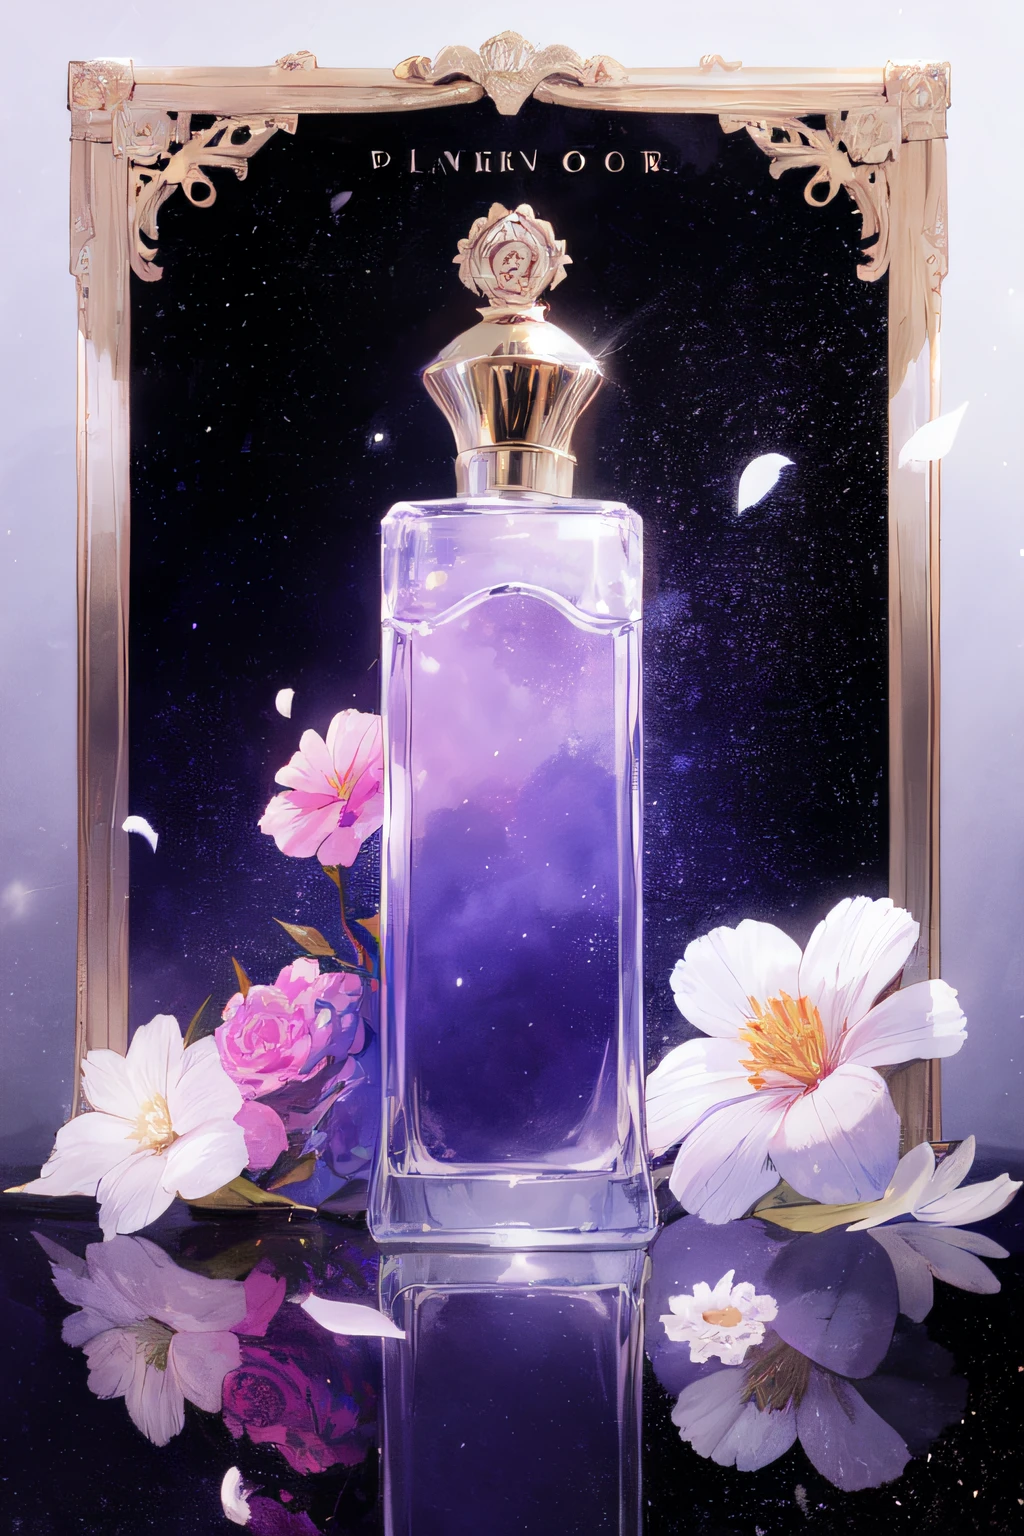 没有人类, 香水瓶, 粉紅色的花朵, 白色的花, 宇宙, 紫色主題, 黑色背景